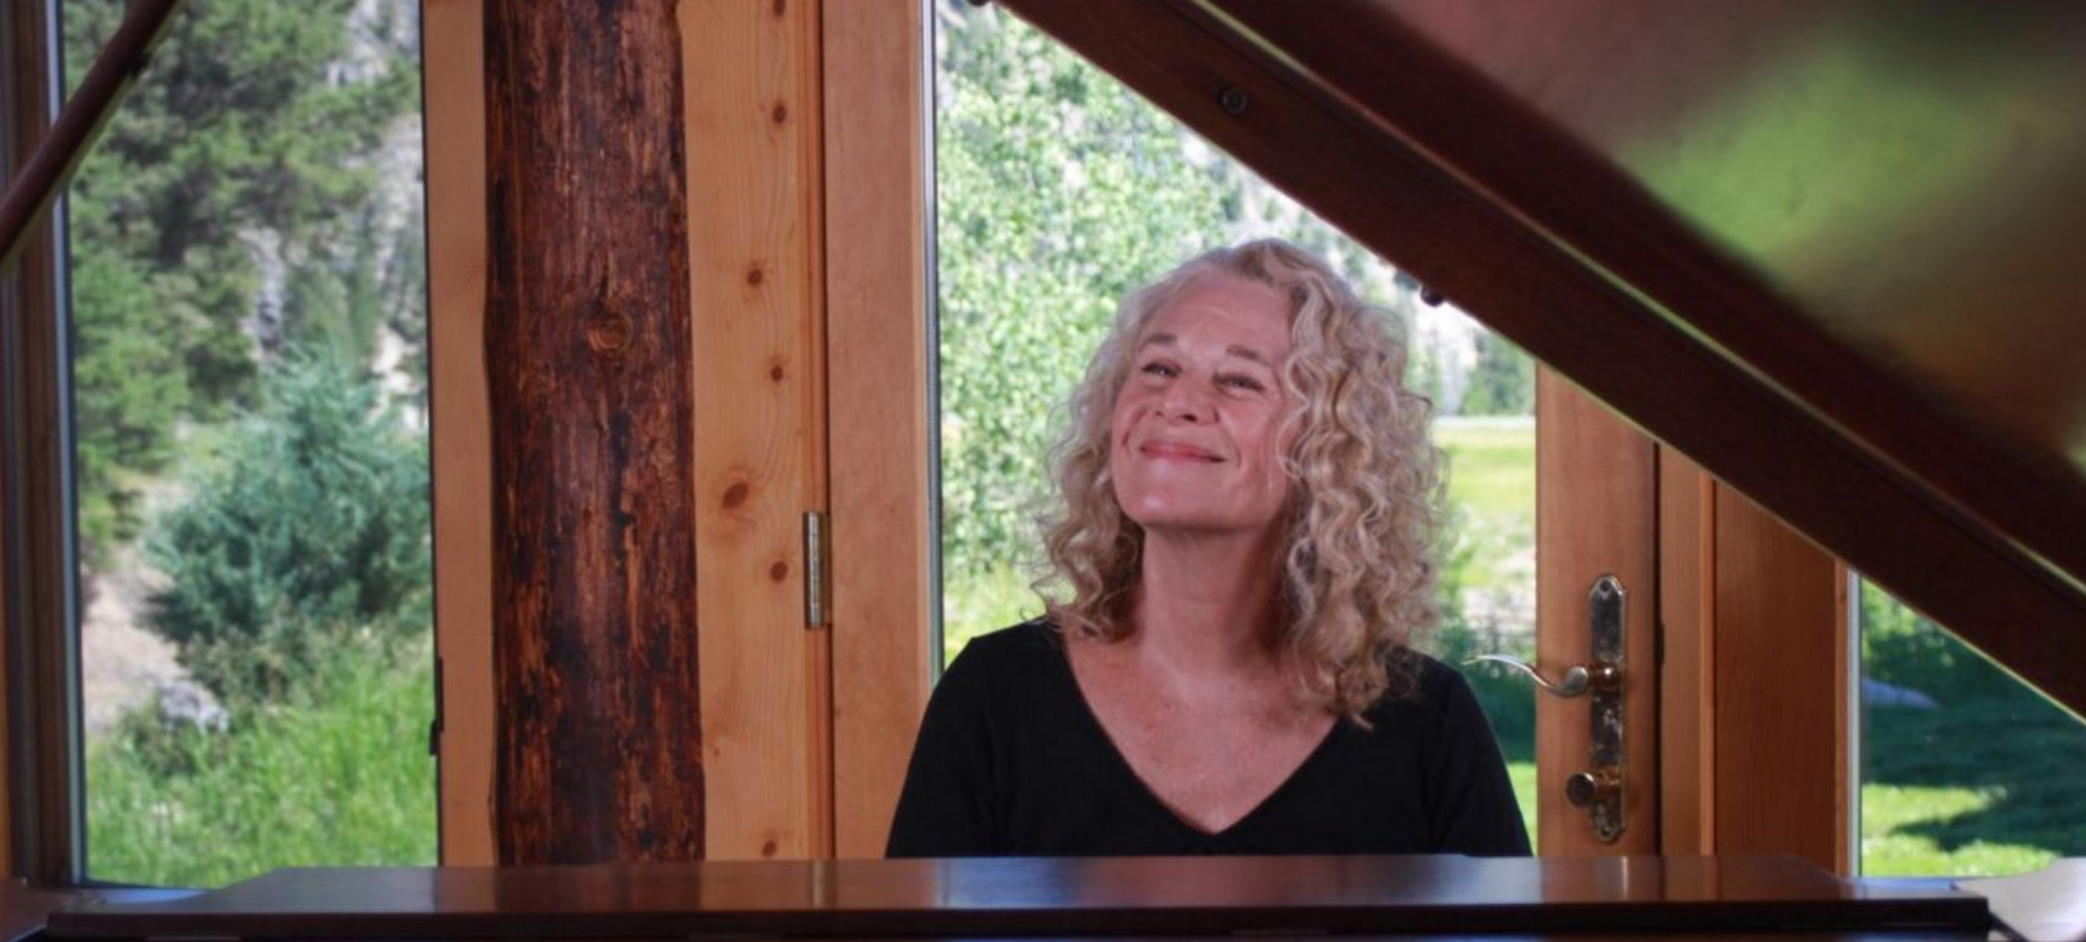 Carole King at piano